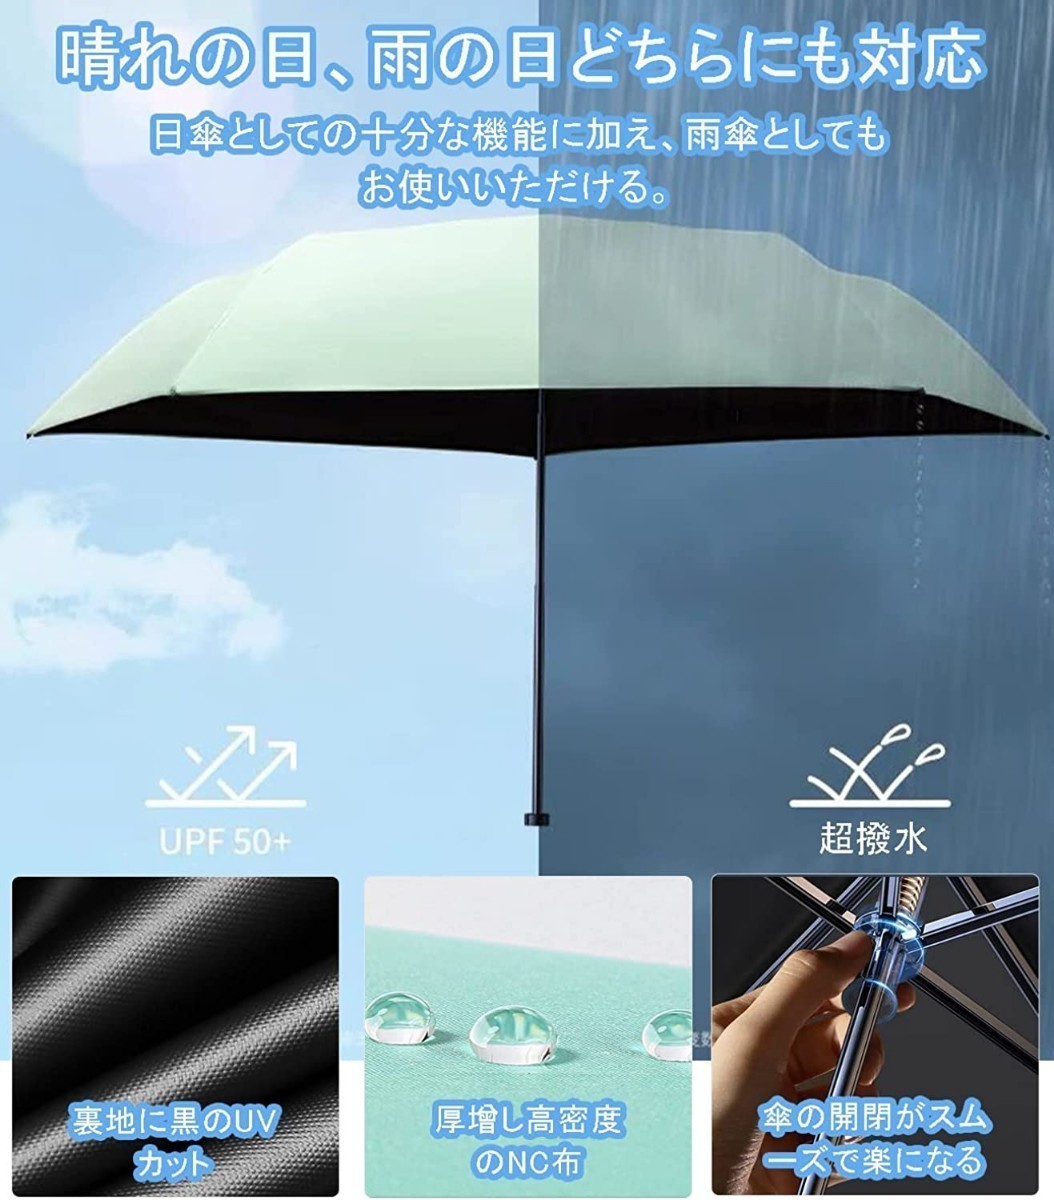 日傘 折りたたみ傘 超軽量 148g UVカット率100% 完全遮光 紫外線対策 晴雨兼用 超コンパクトサイズ 超撥水 無地 収納ポーチ付き ピンク 